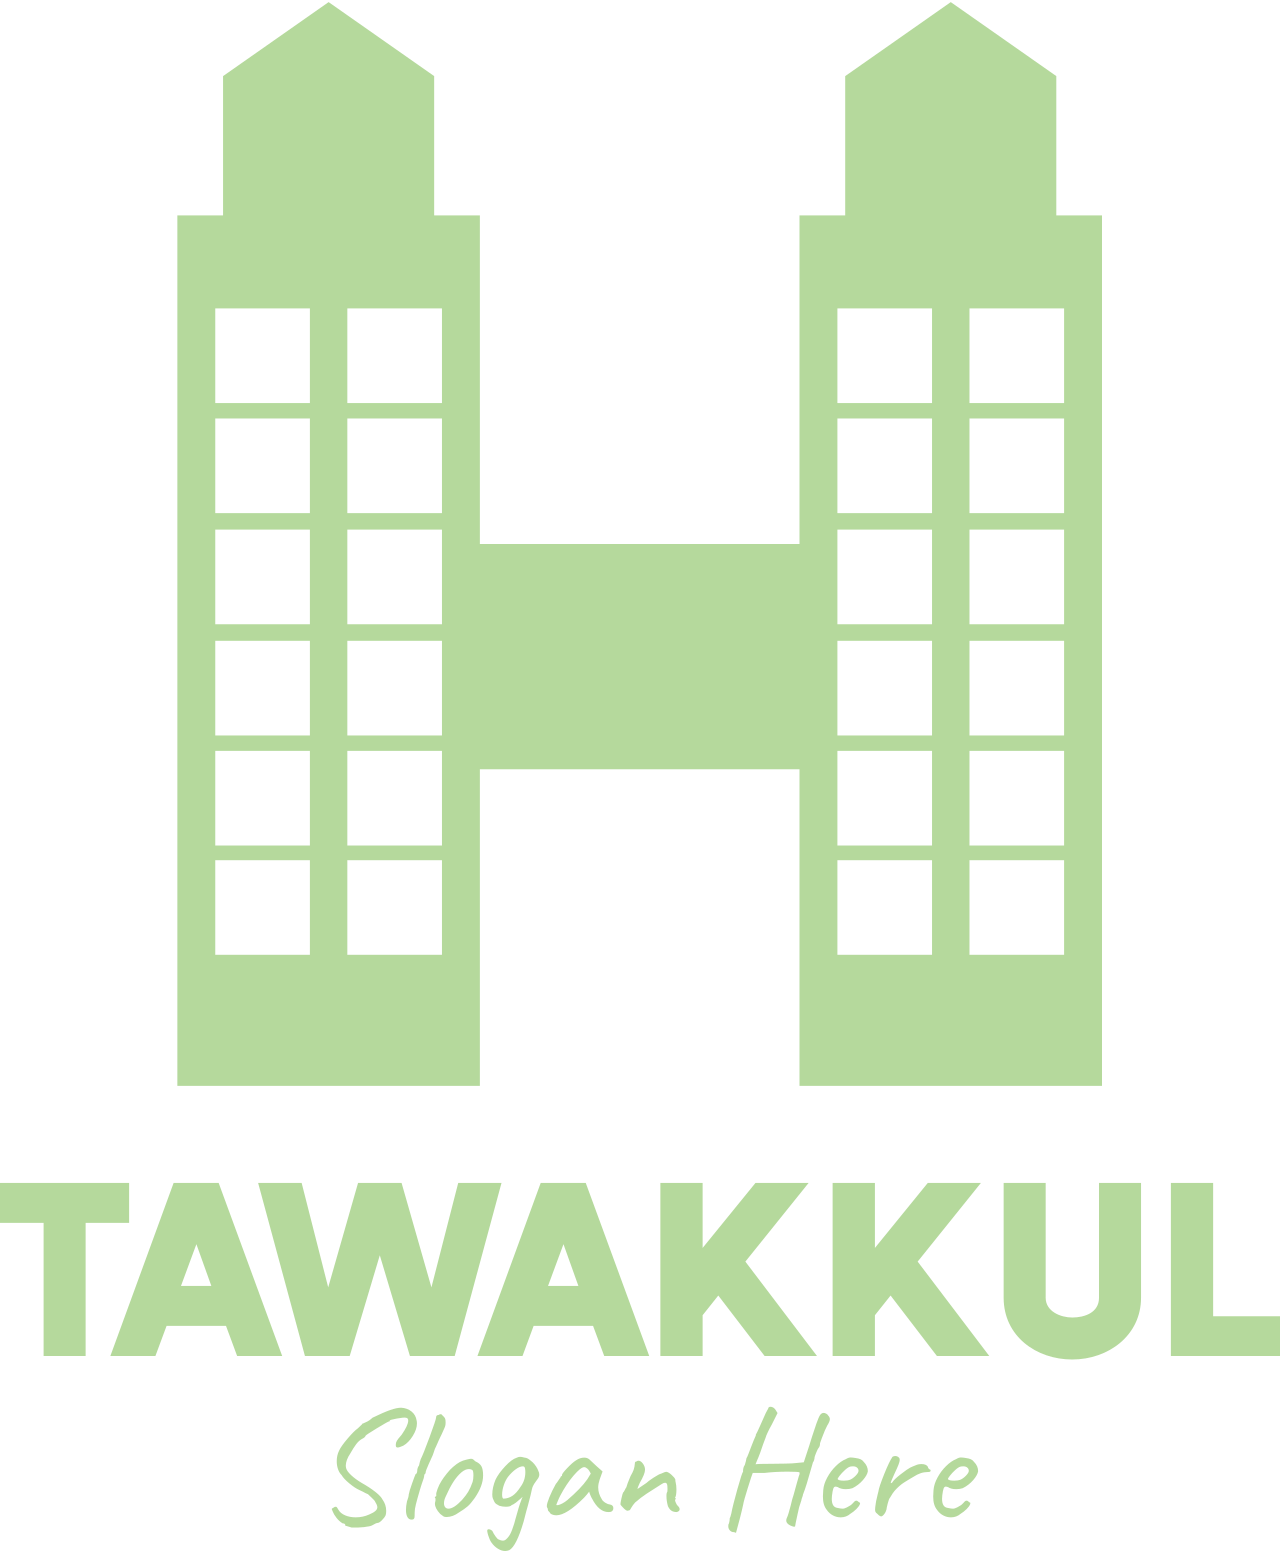 tawakkul's logo